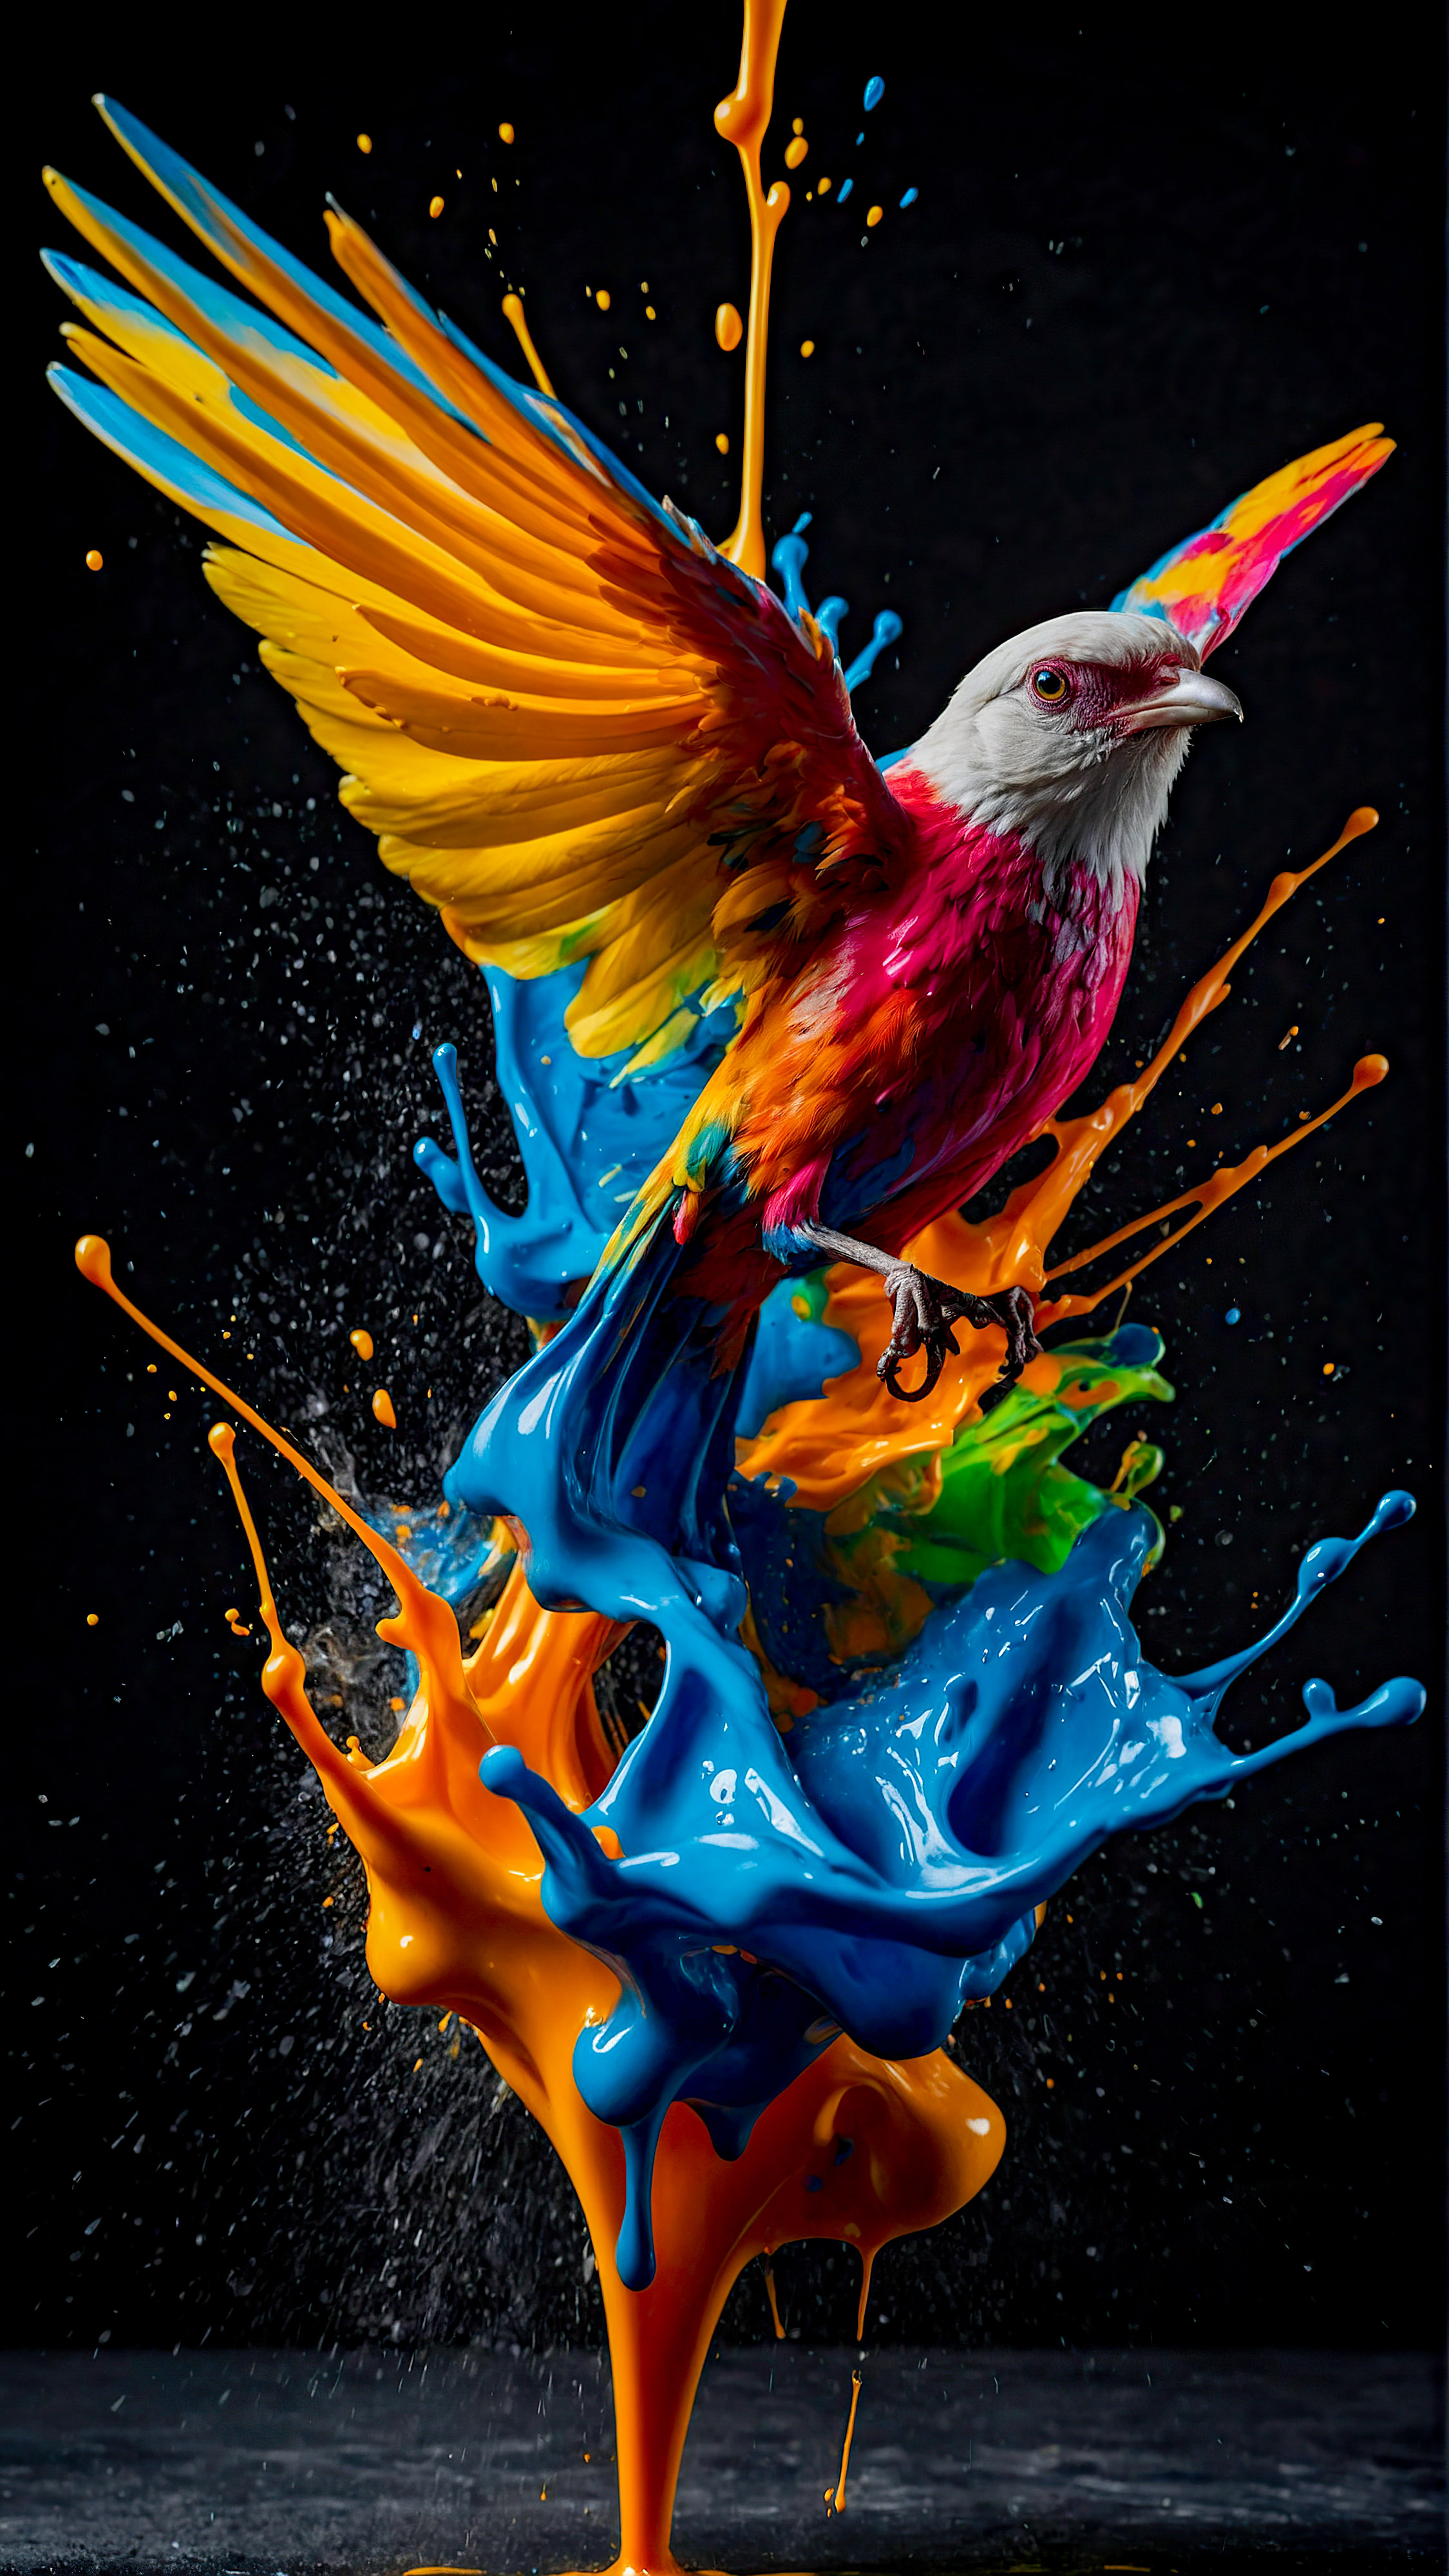 Découvrez la vibrance des couleurs avec notre arrière-plan en 4K pour iPhone, présentant une éclaboussure dynamique et colorée de peinture, ressemblant à un oiseau en vol, sur un fond sombre.